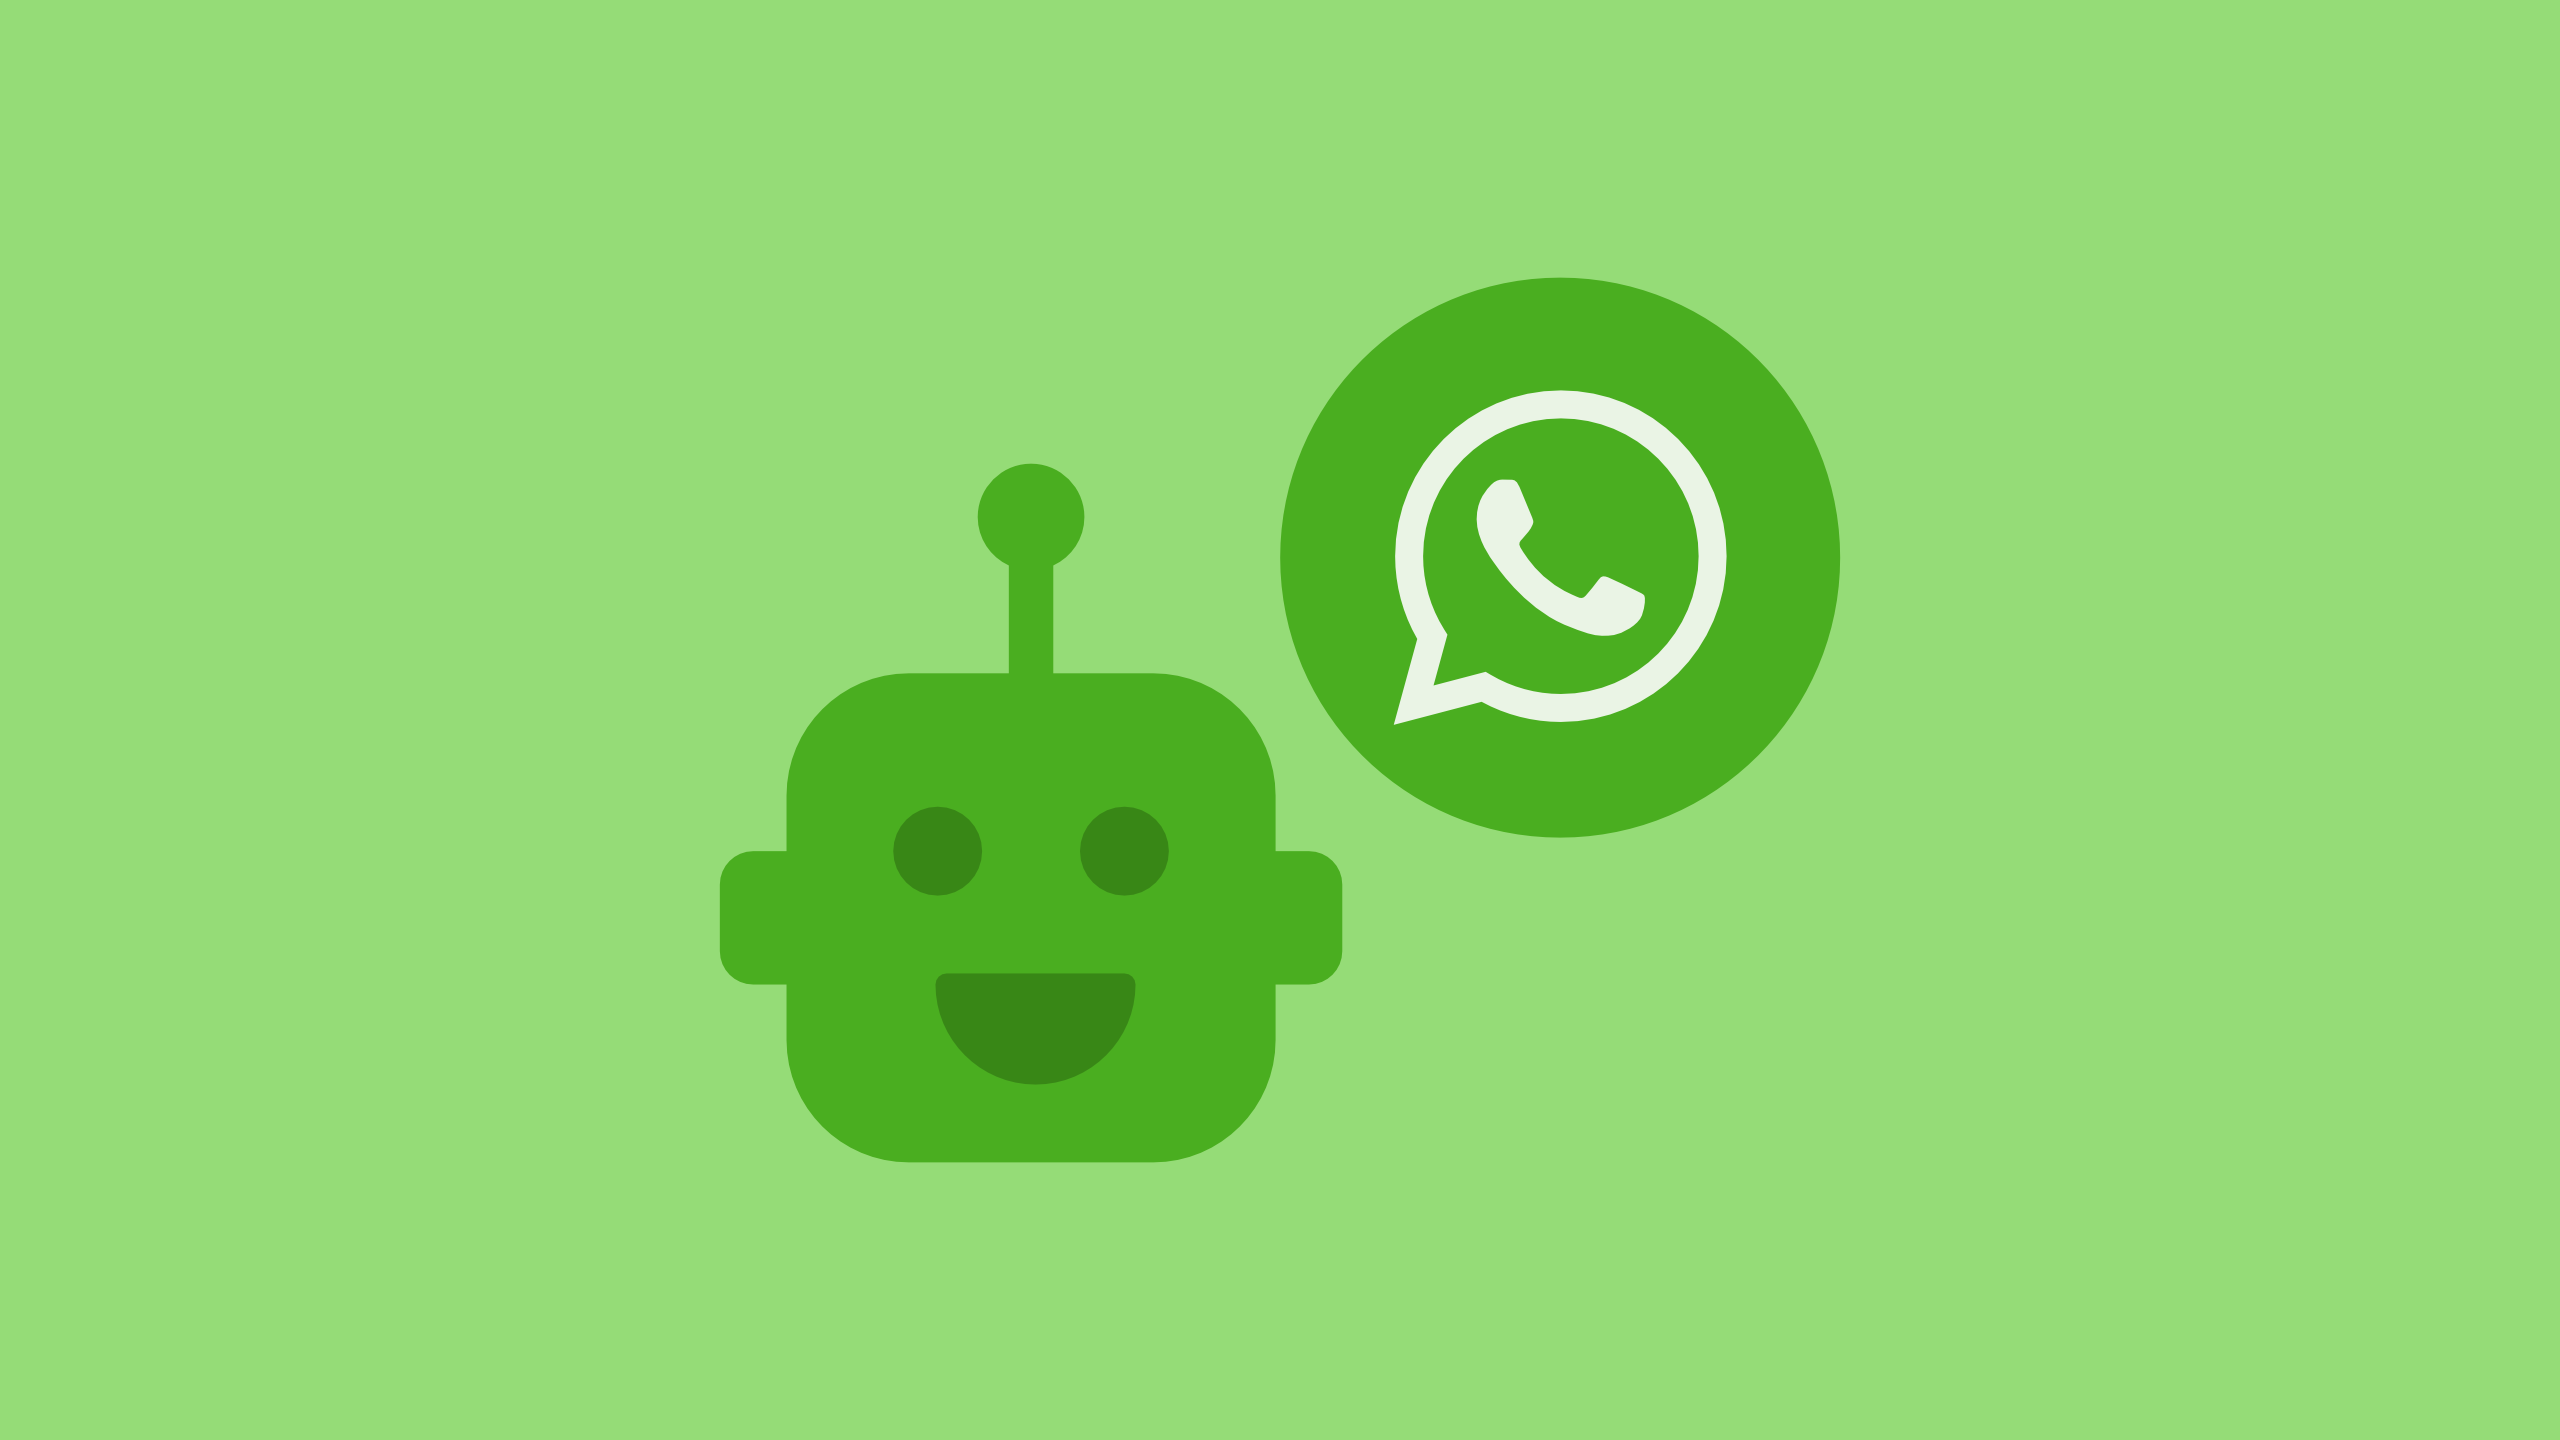 Concursos do WhatsApp Chatbot uma estratégia de marketing eficaz